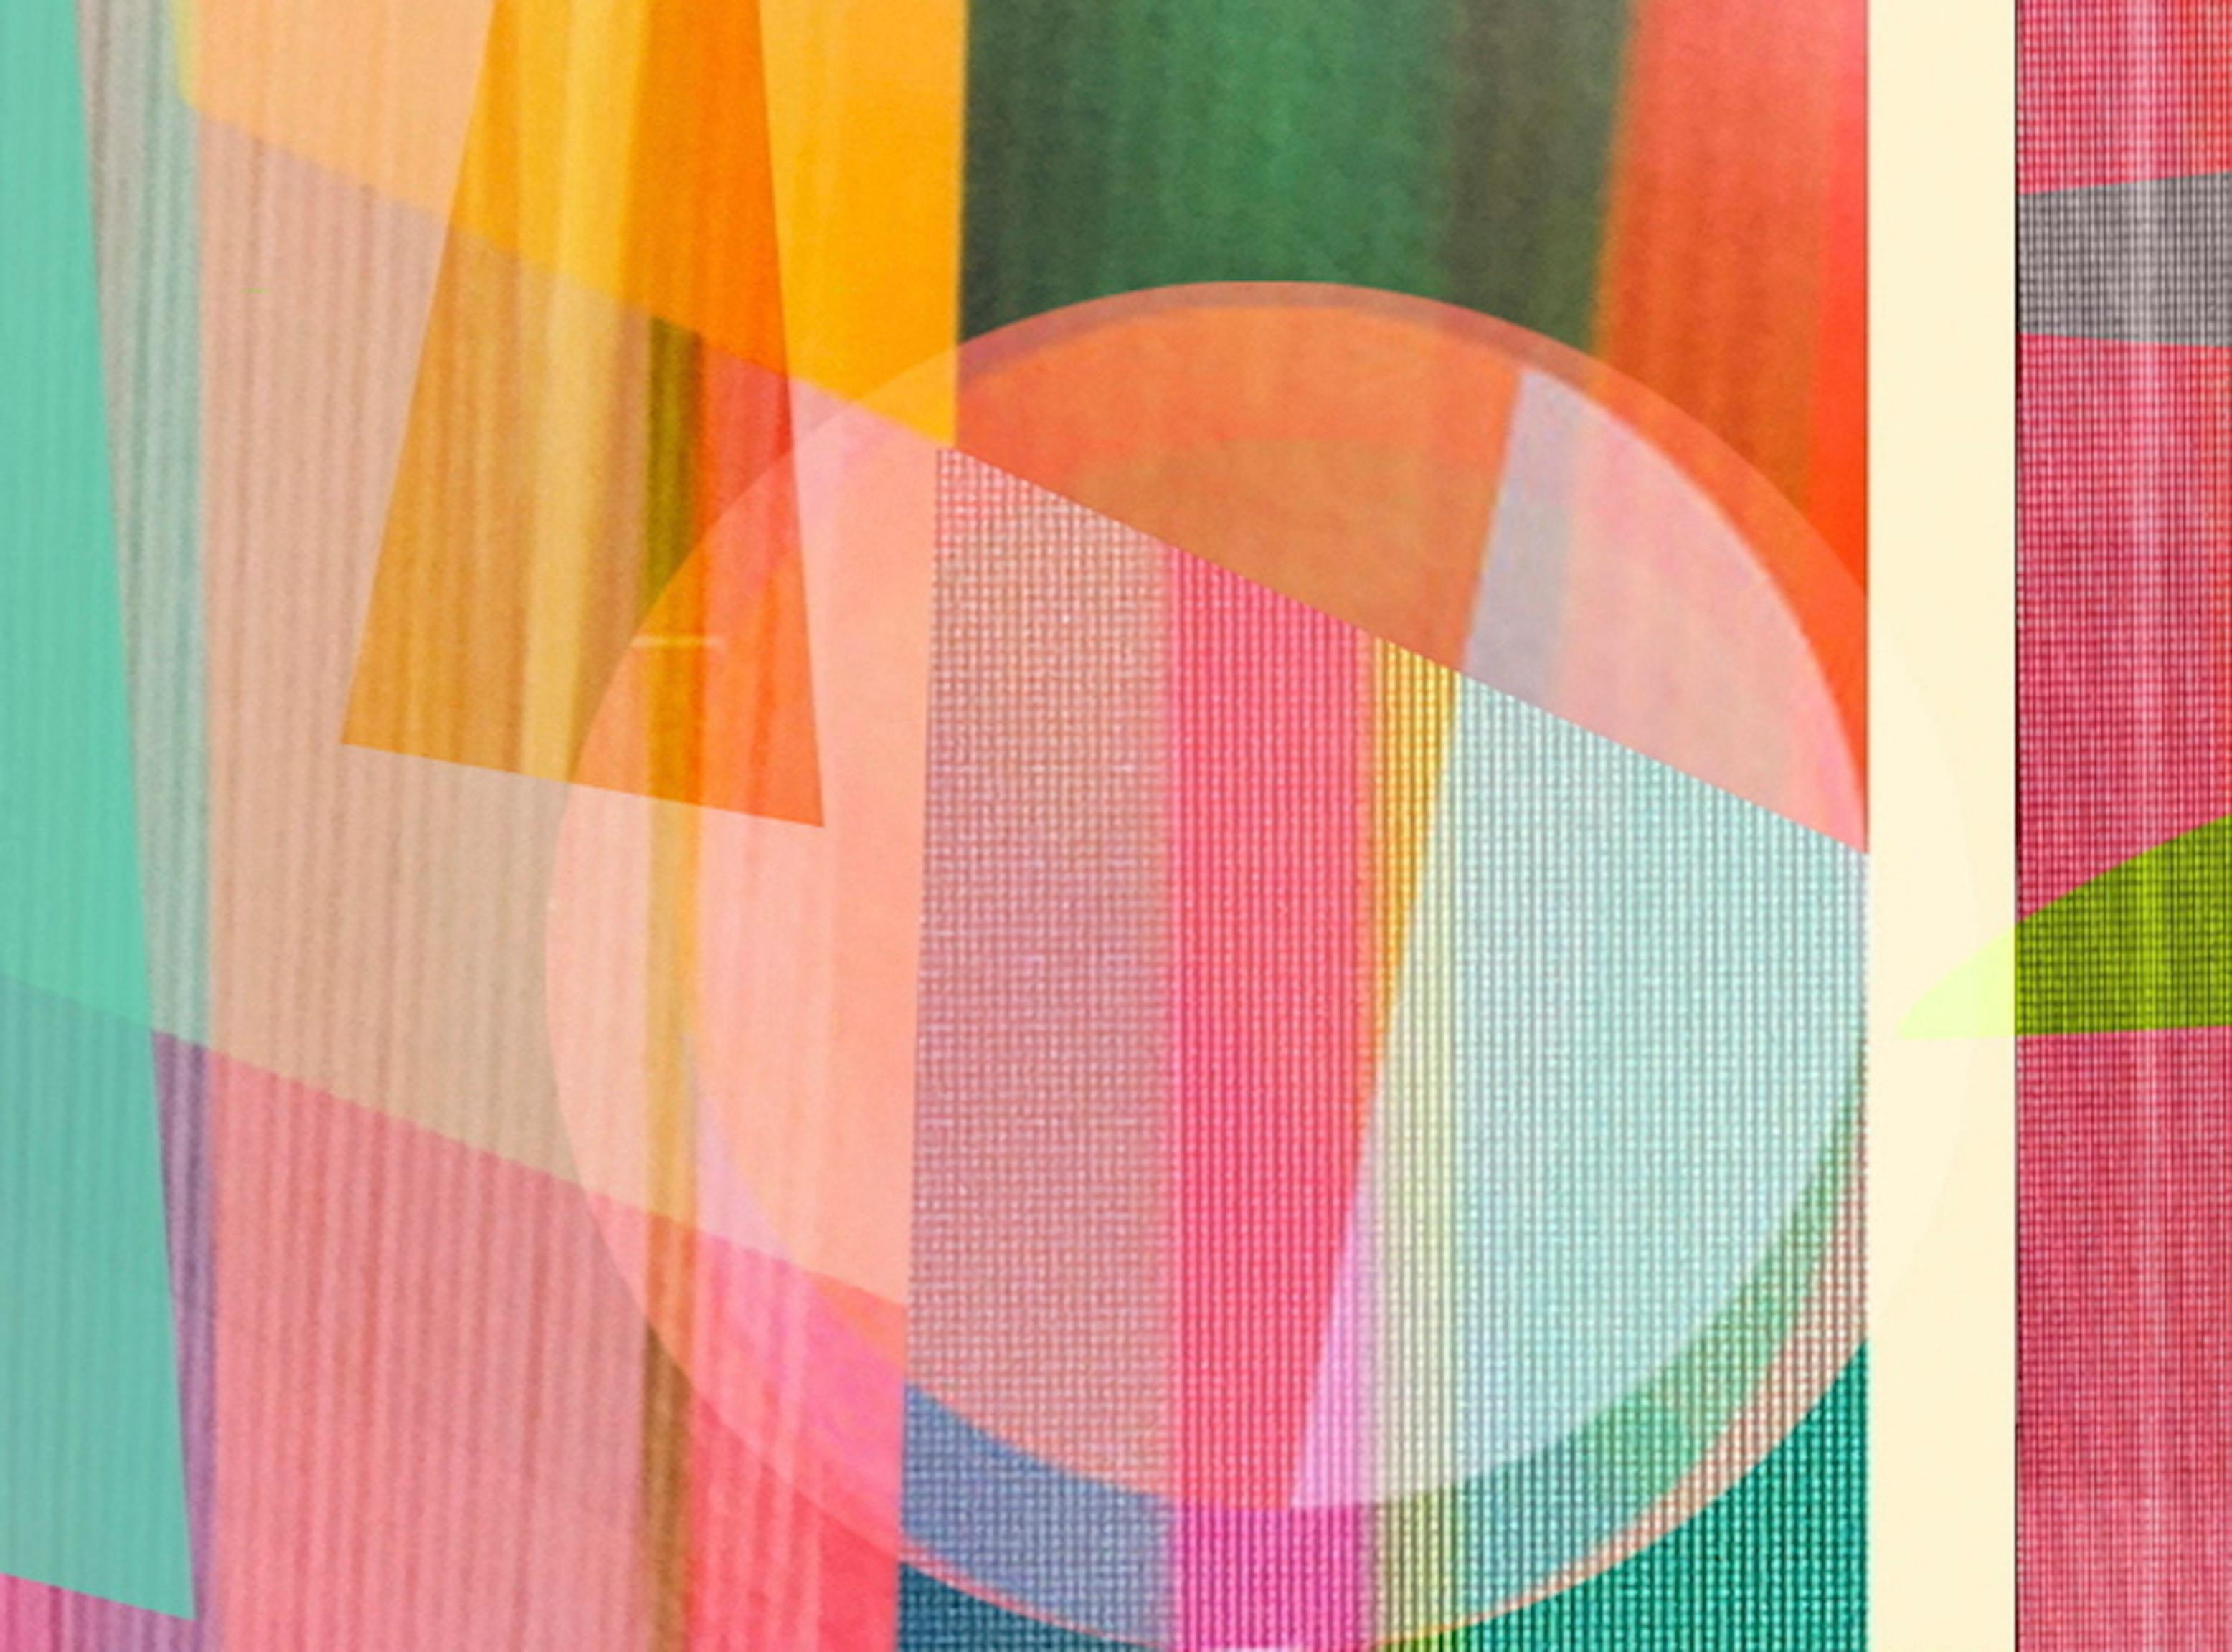 Zeitlos 19. Abstrakte Farbfotografie in limitierter Auflage (Geometrische Abstraktion), Photograph, von Monika Bravo